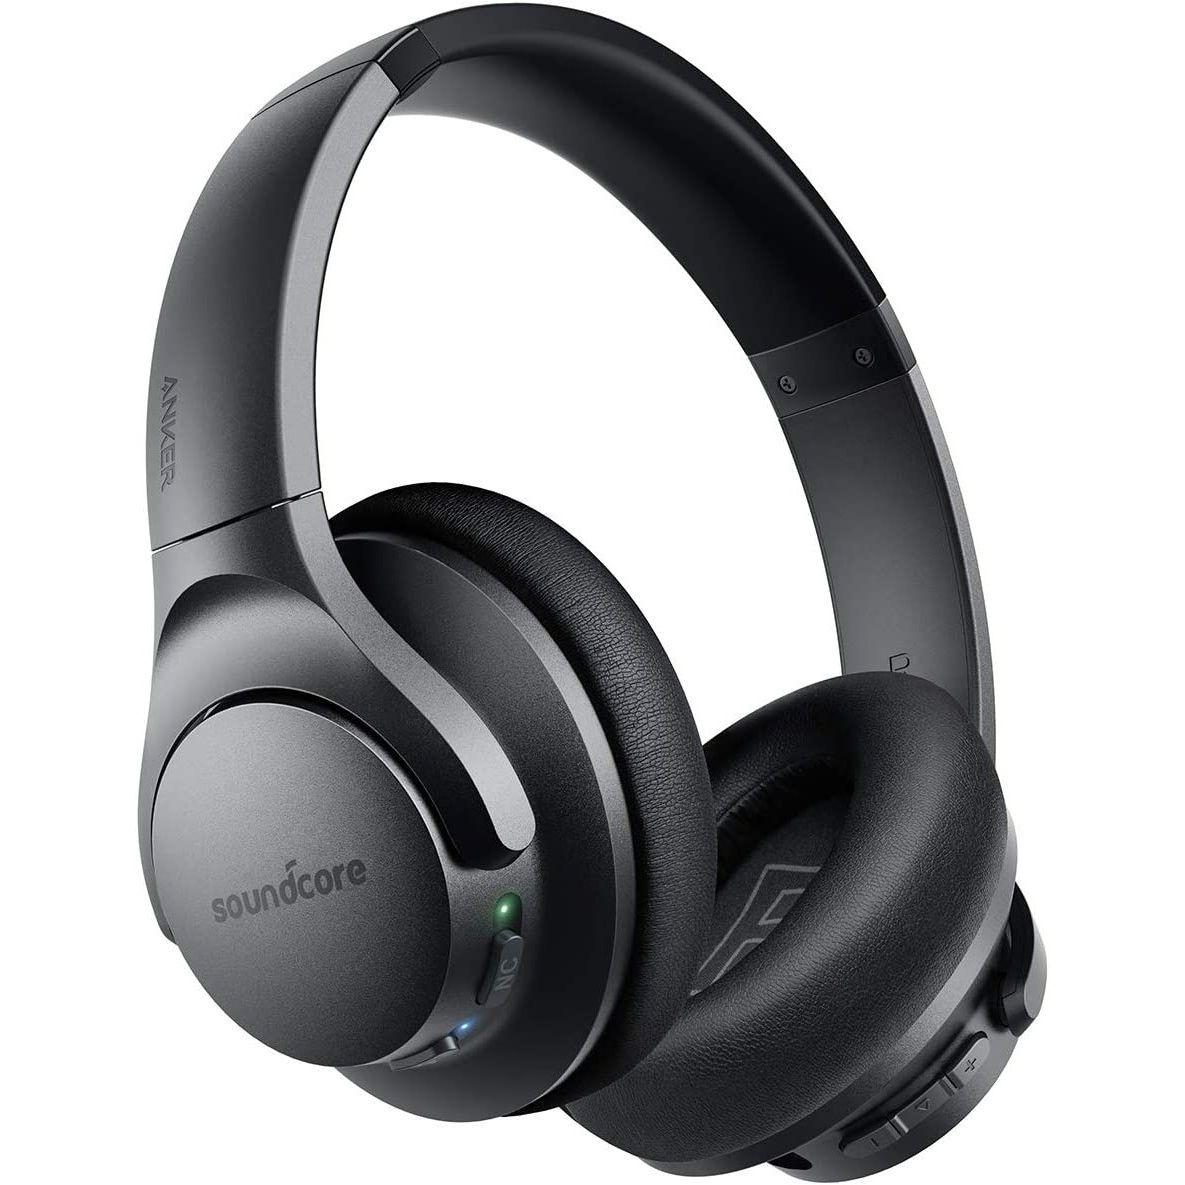 Anker Soundcore Life Q20 wireless headphones